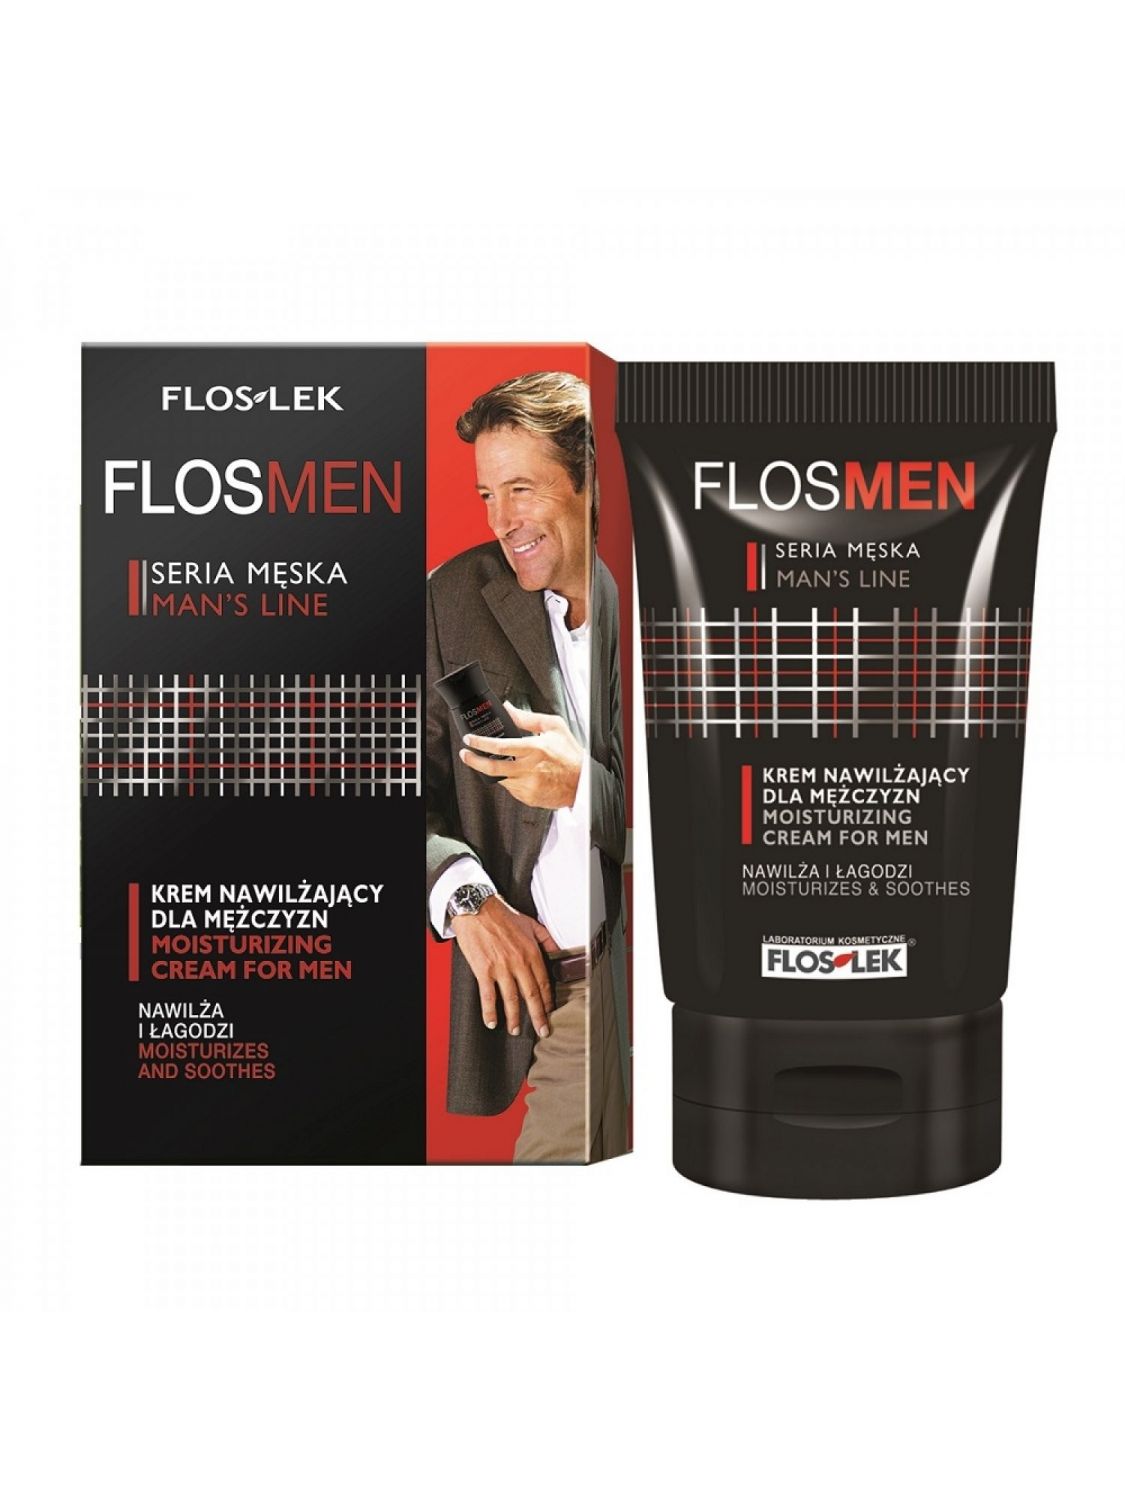 Зволожуючий крем для чоловіків Floslek FLOS MEN